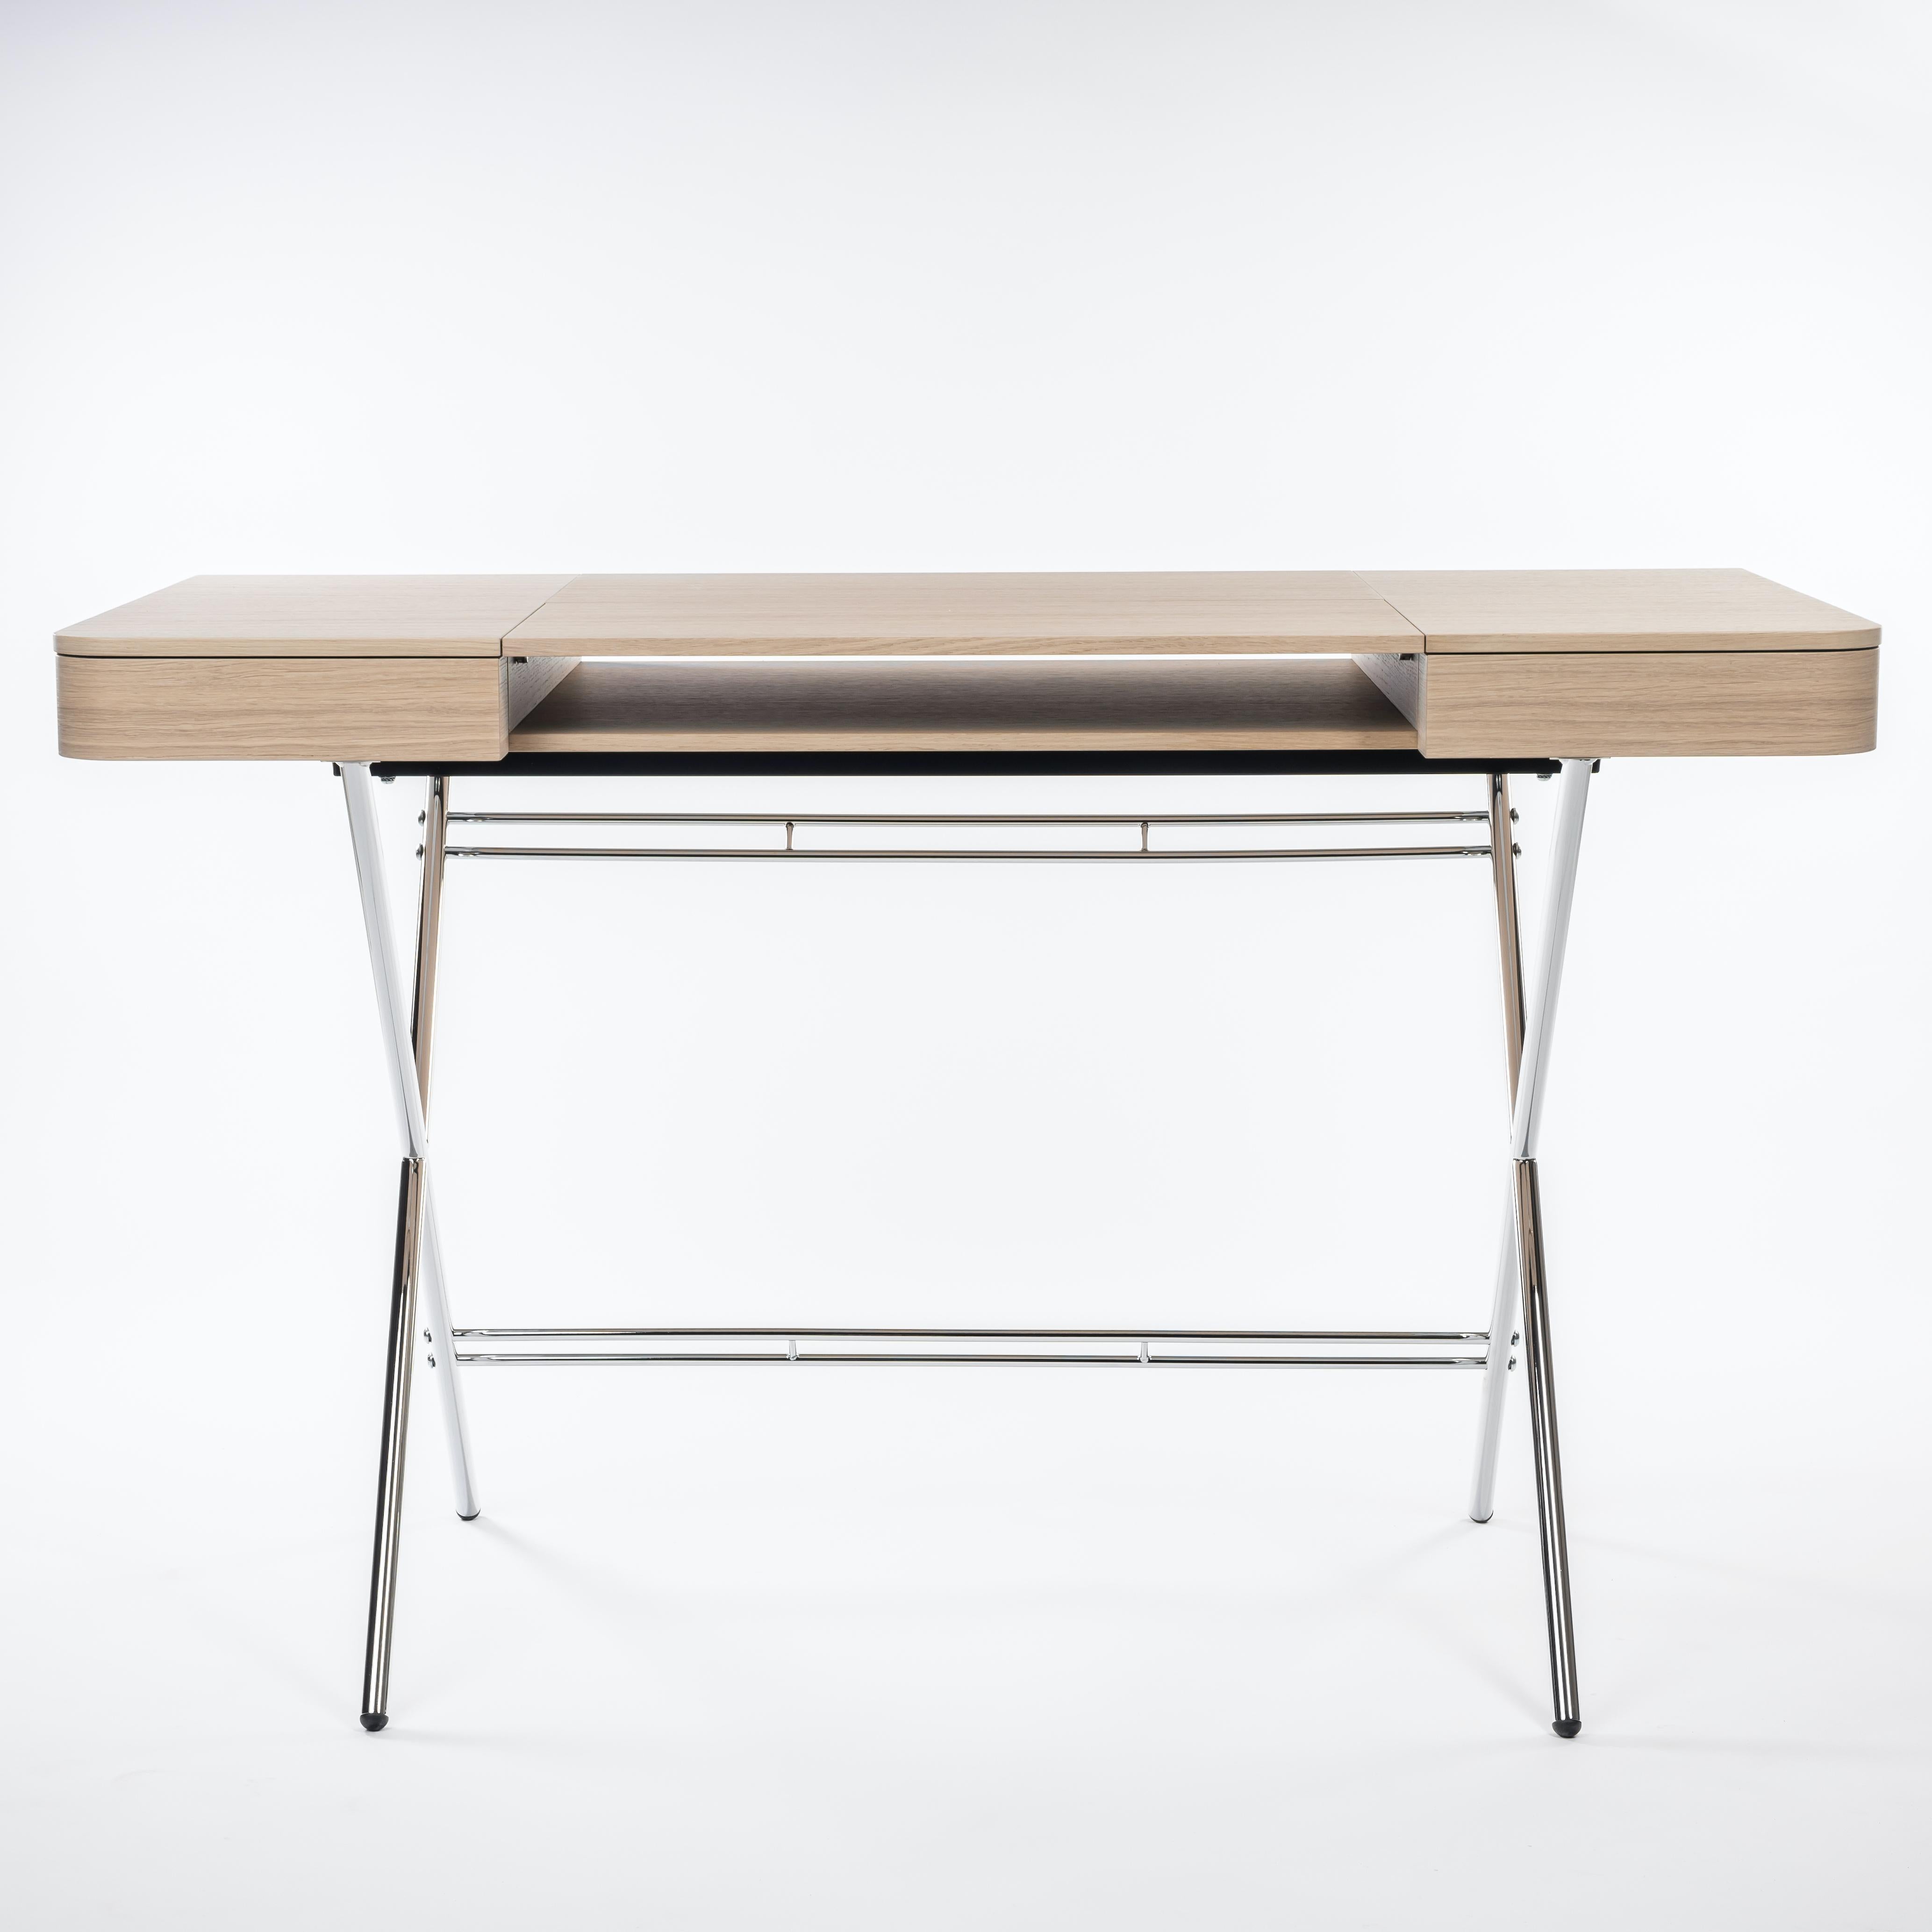 Der Schreibtisch Cosimo wurde 2017 von dem Architekten Marco Zanuso Jr. für die französische Luxusmöbelmarke Adentro Paris entworfen. Die mittlere Platte des Schreibtisches lässt sich zurückklappen, um ein verstecktes Regal darunter freizugeben, und